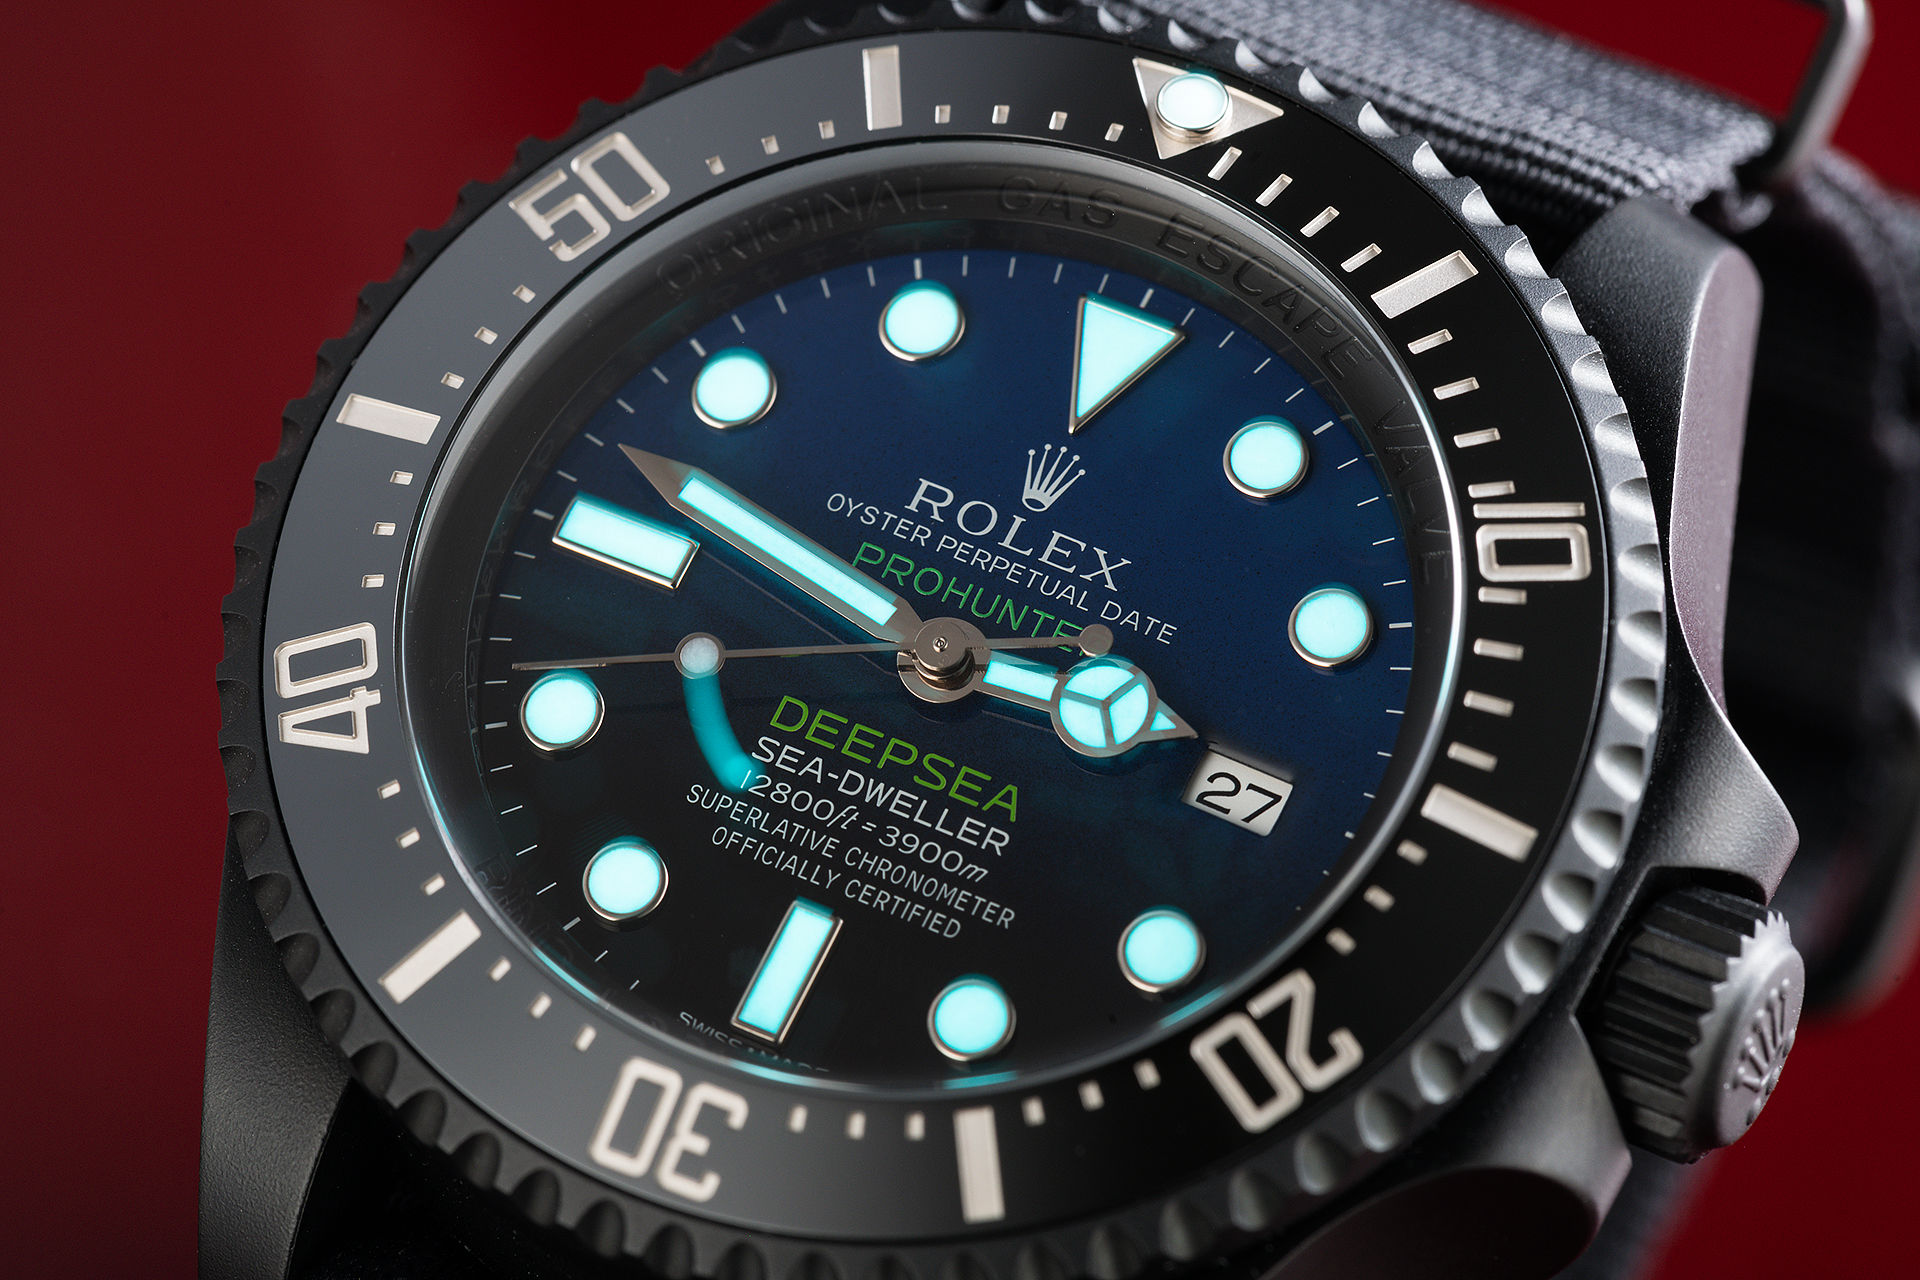 ref 116660 | One of 100 | Pro Hunter Sea-Dweller Deepsea